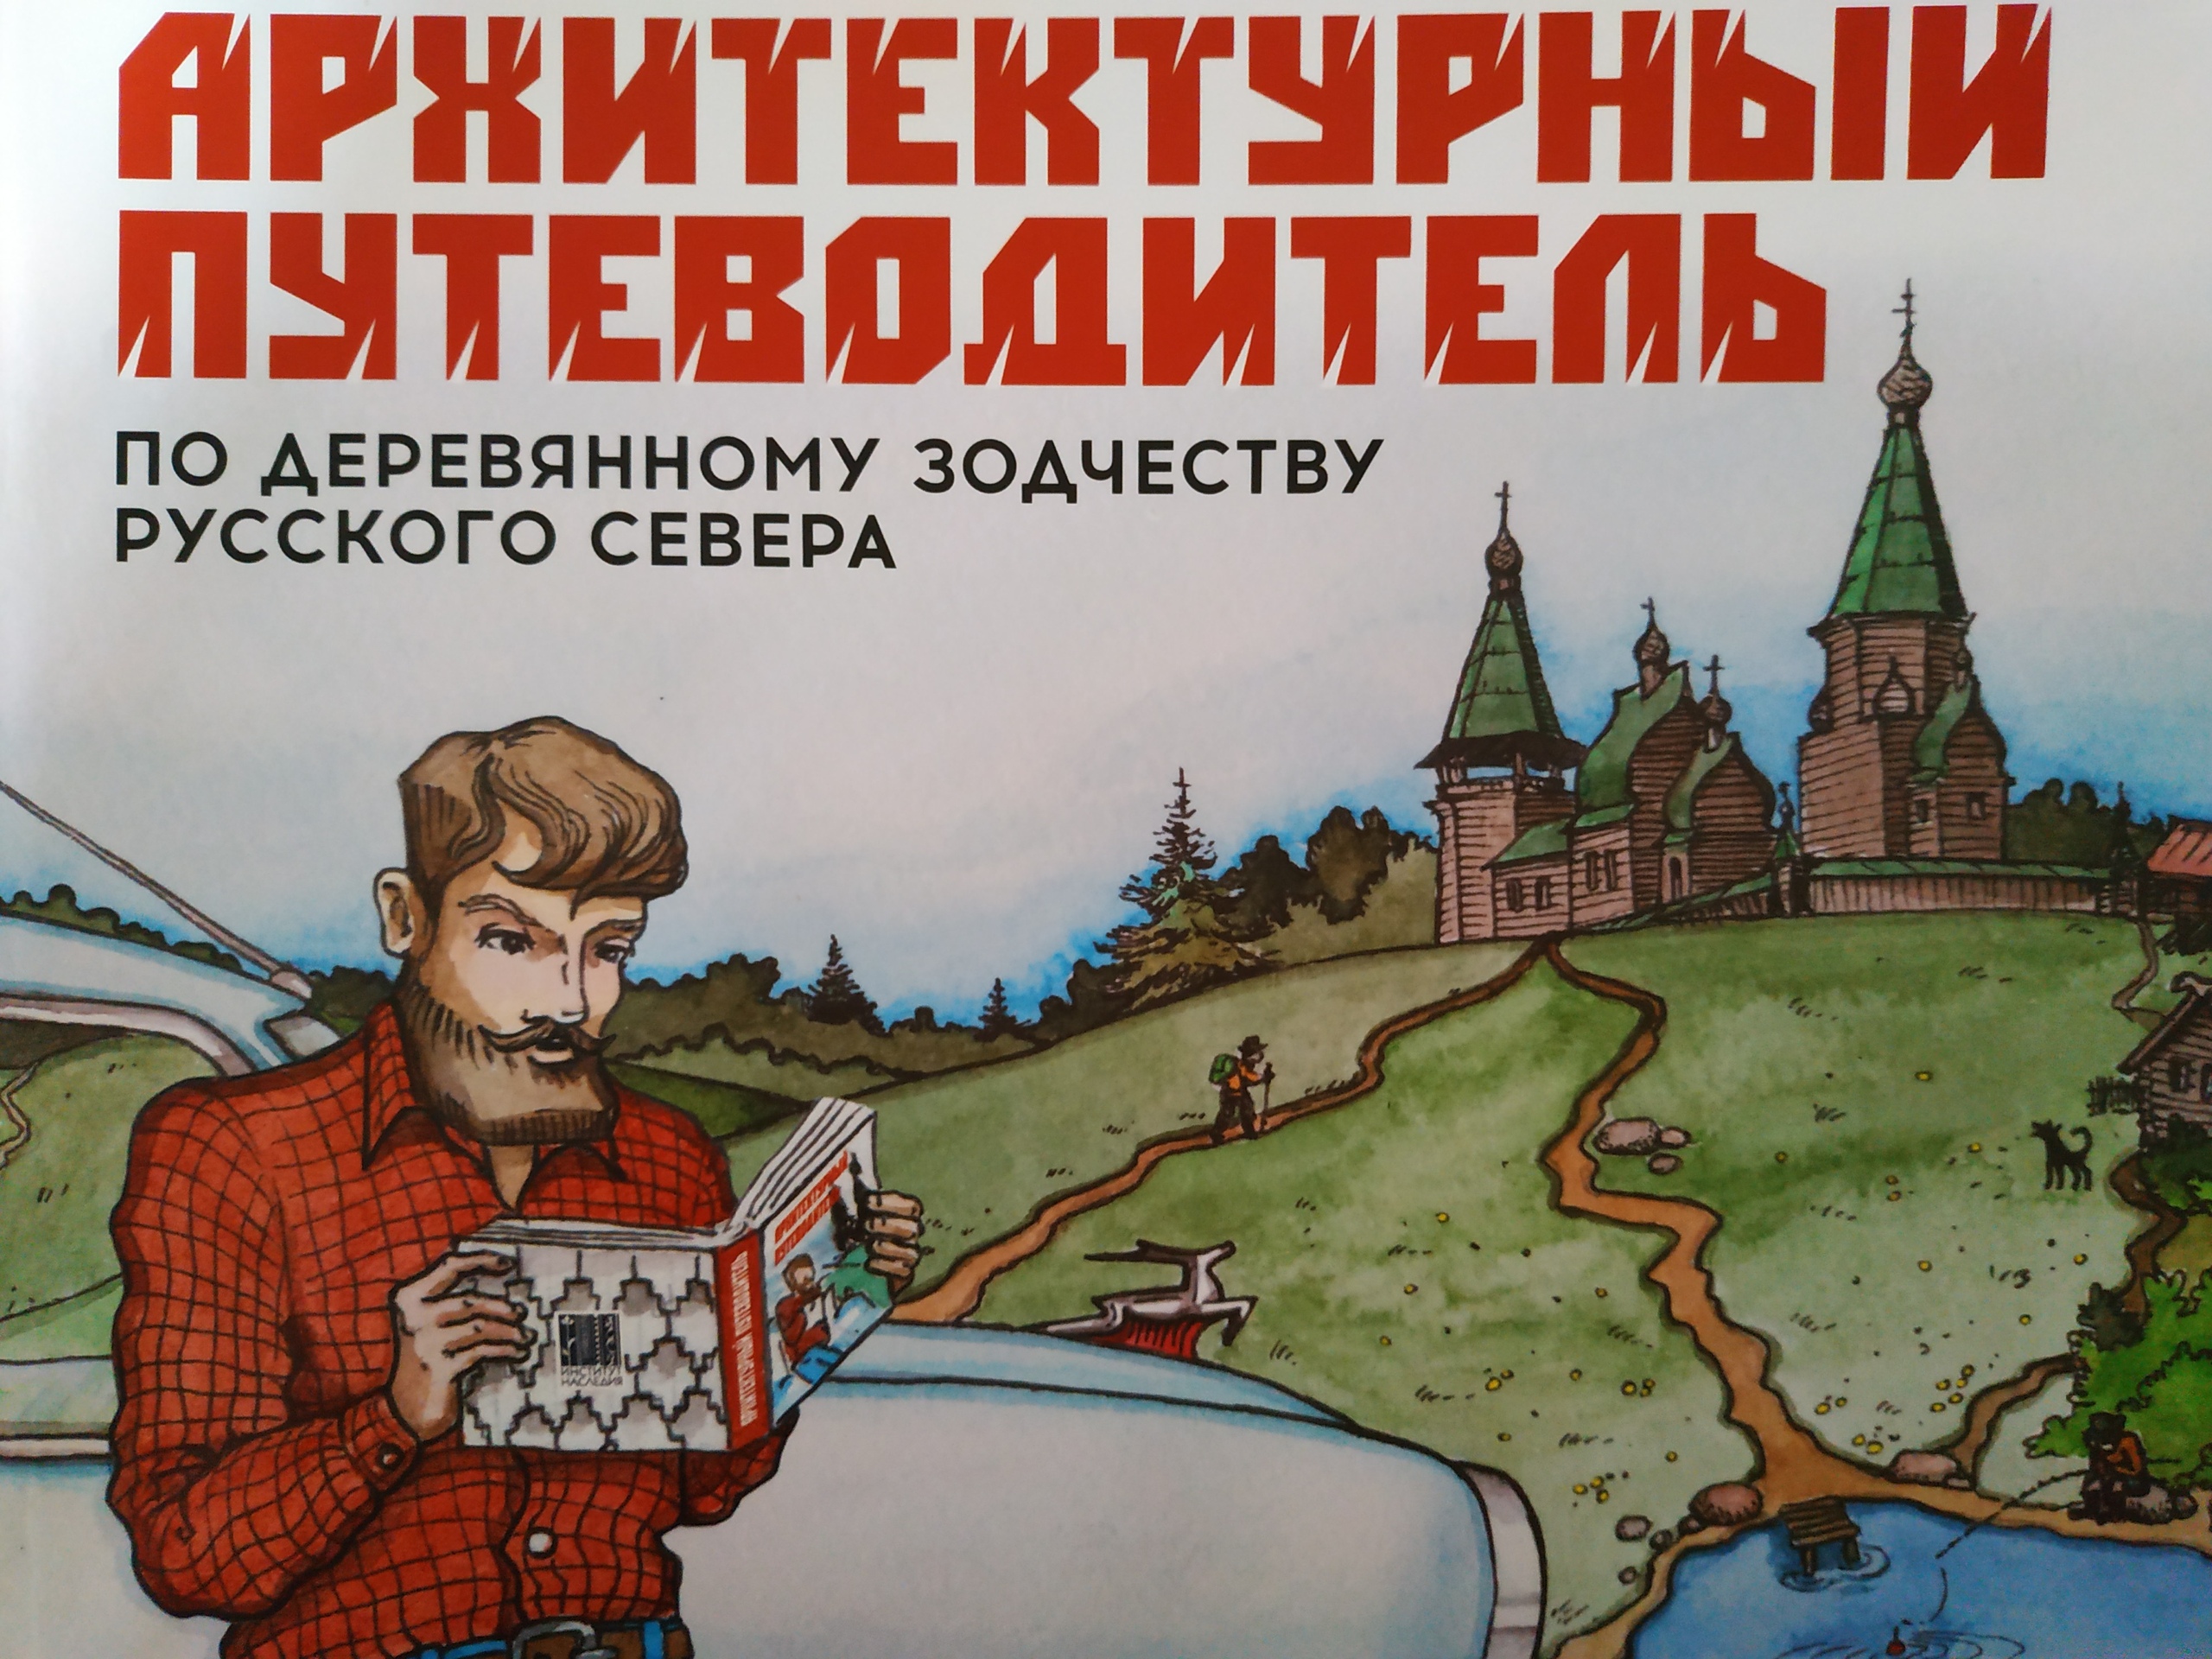 Обложка нового путеводителя по Русскому Северу